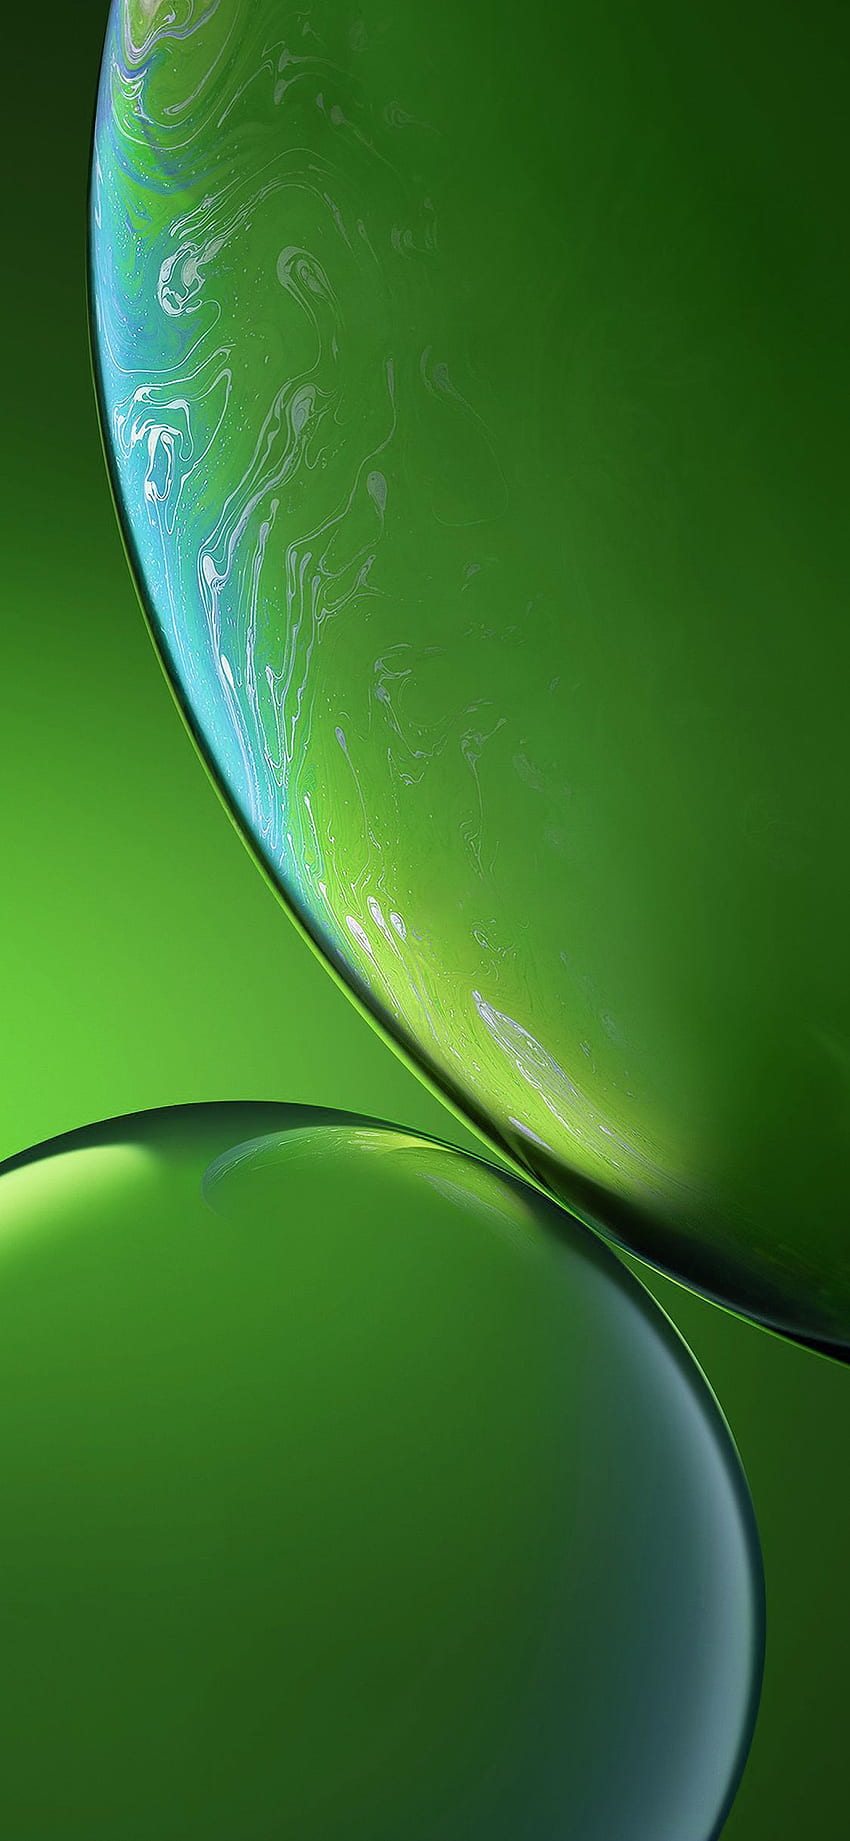 iPhone XR - 보너스 - 누락된 색상(녹색) - 중앙. 그린, 아이폰, 애플 아이폰, 슈퍼 라이트 그린 HD 전화 배경 화면